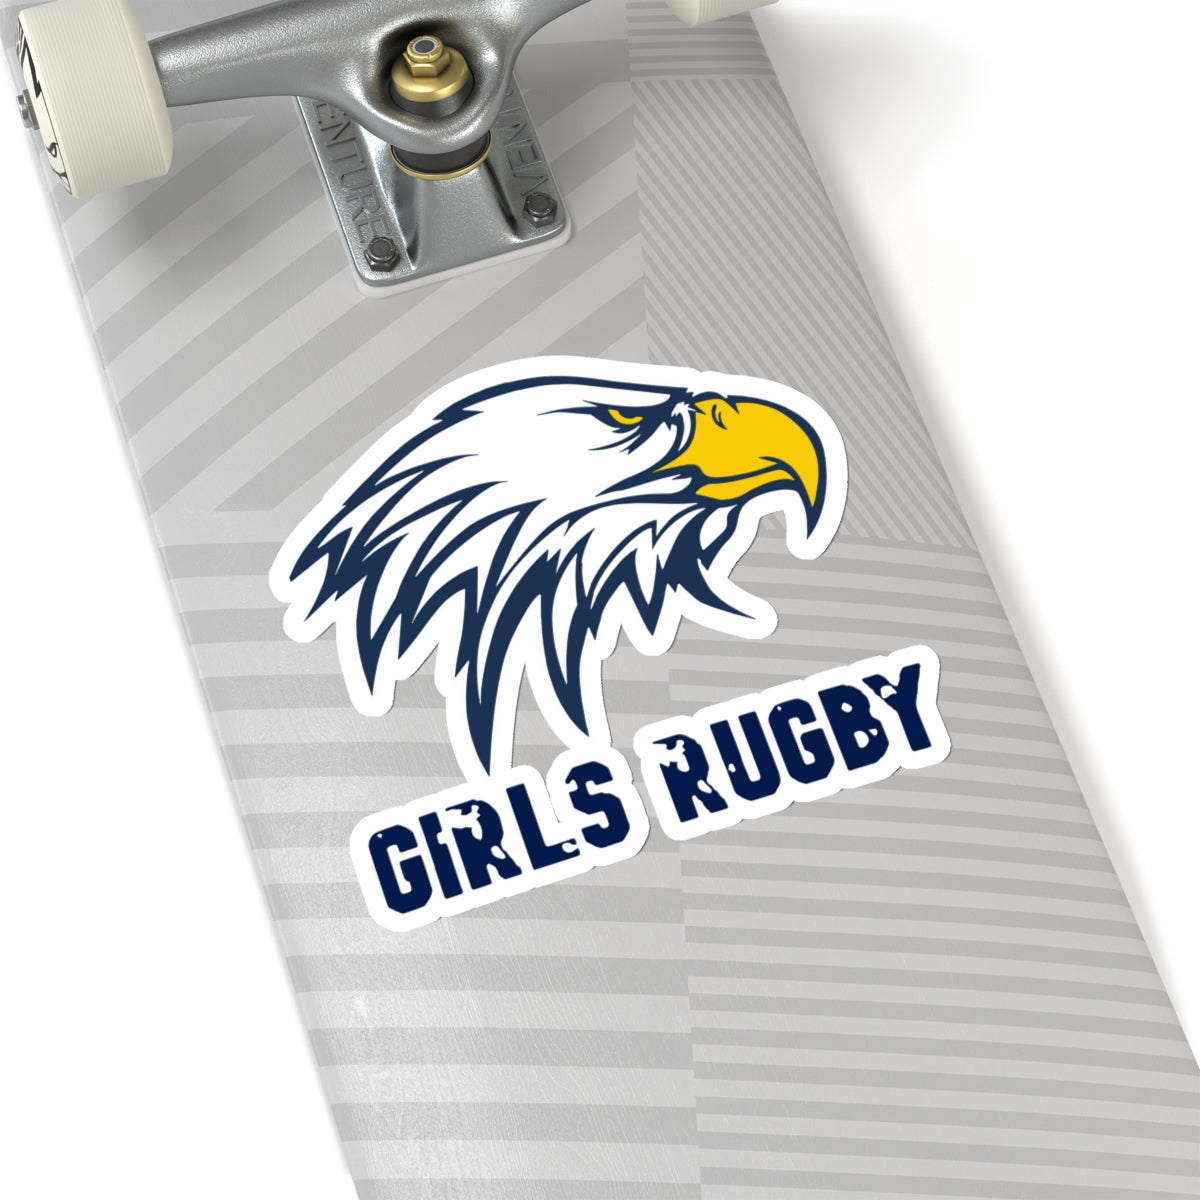 Die Cut Stickers | Cincinnati Girls Rugby Logo Color